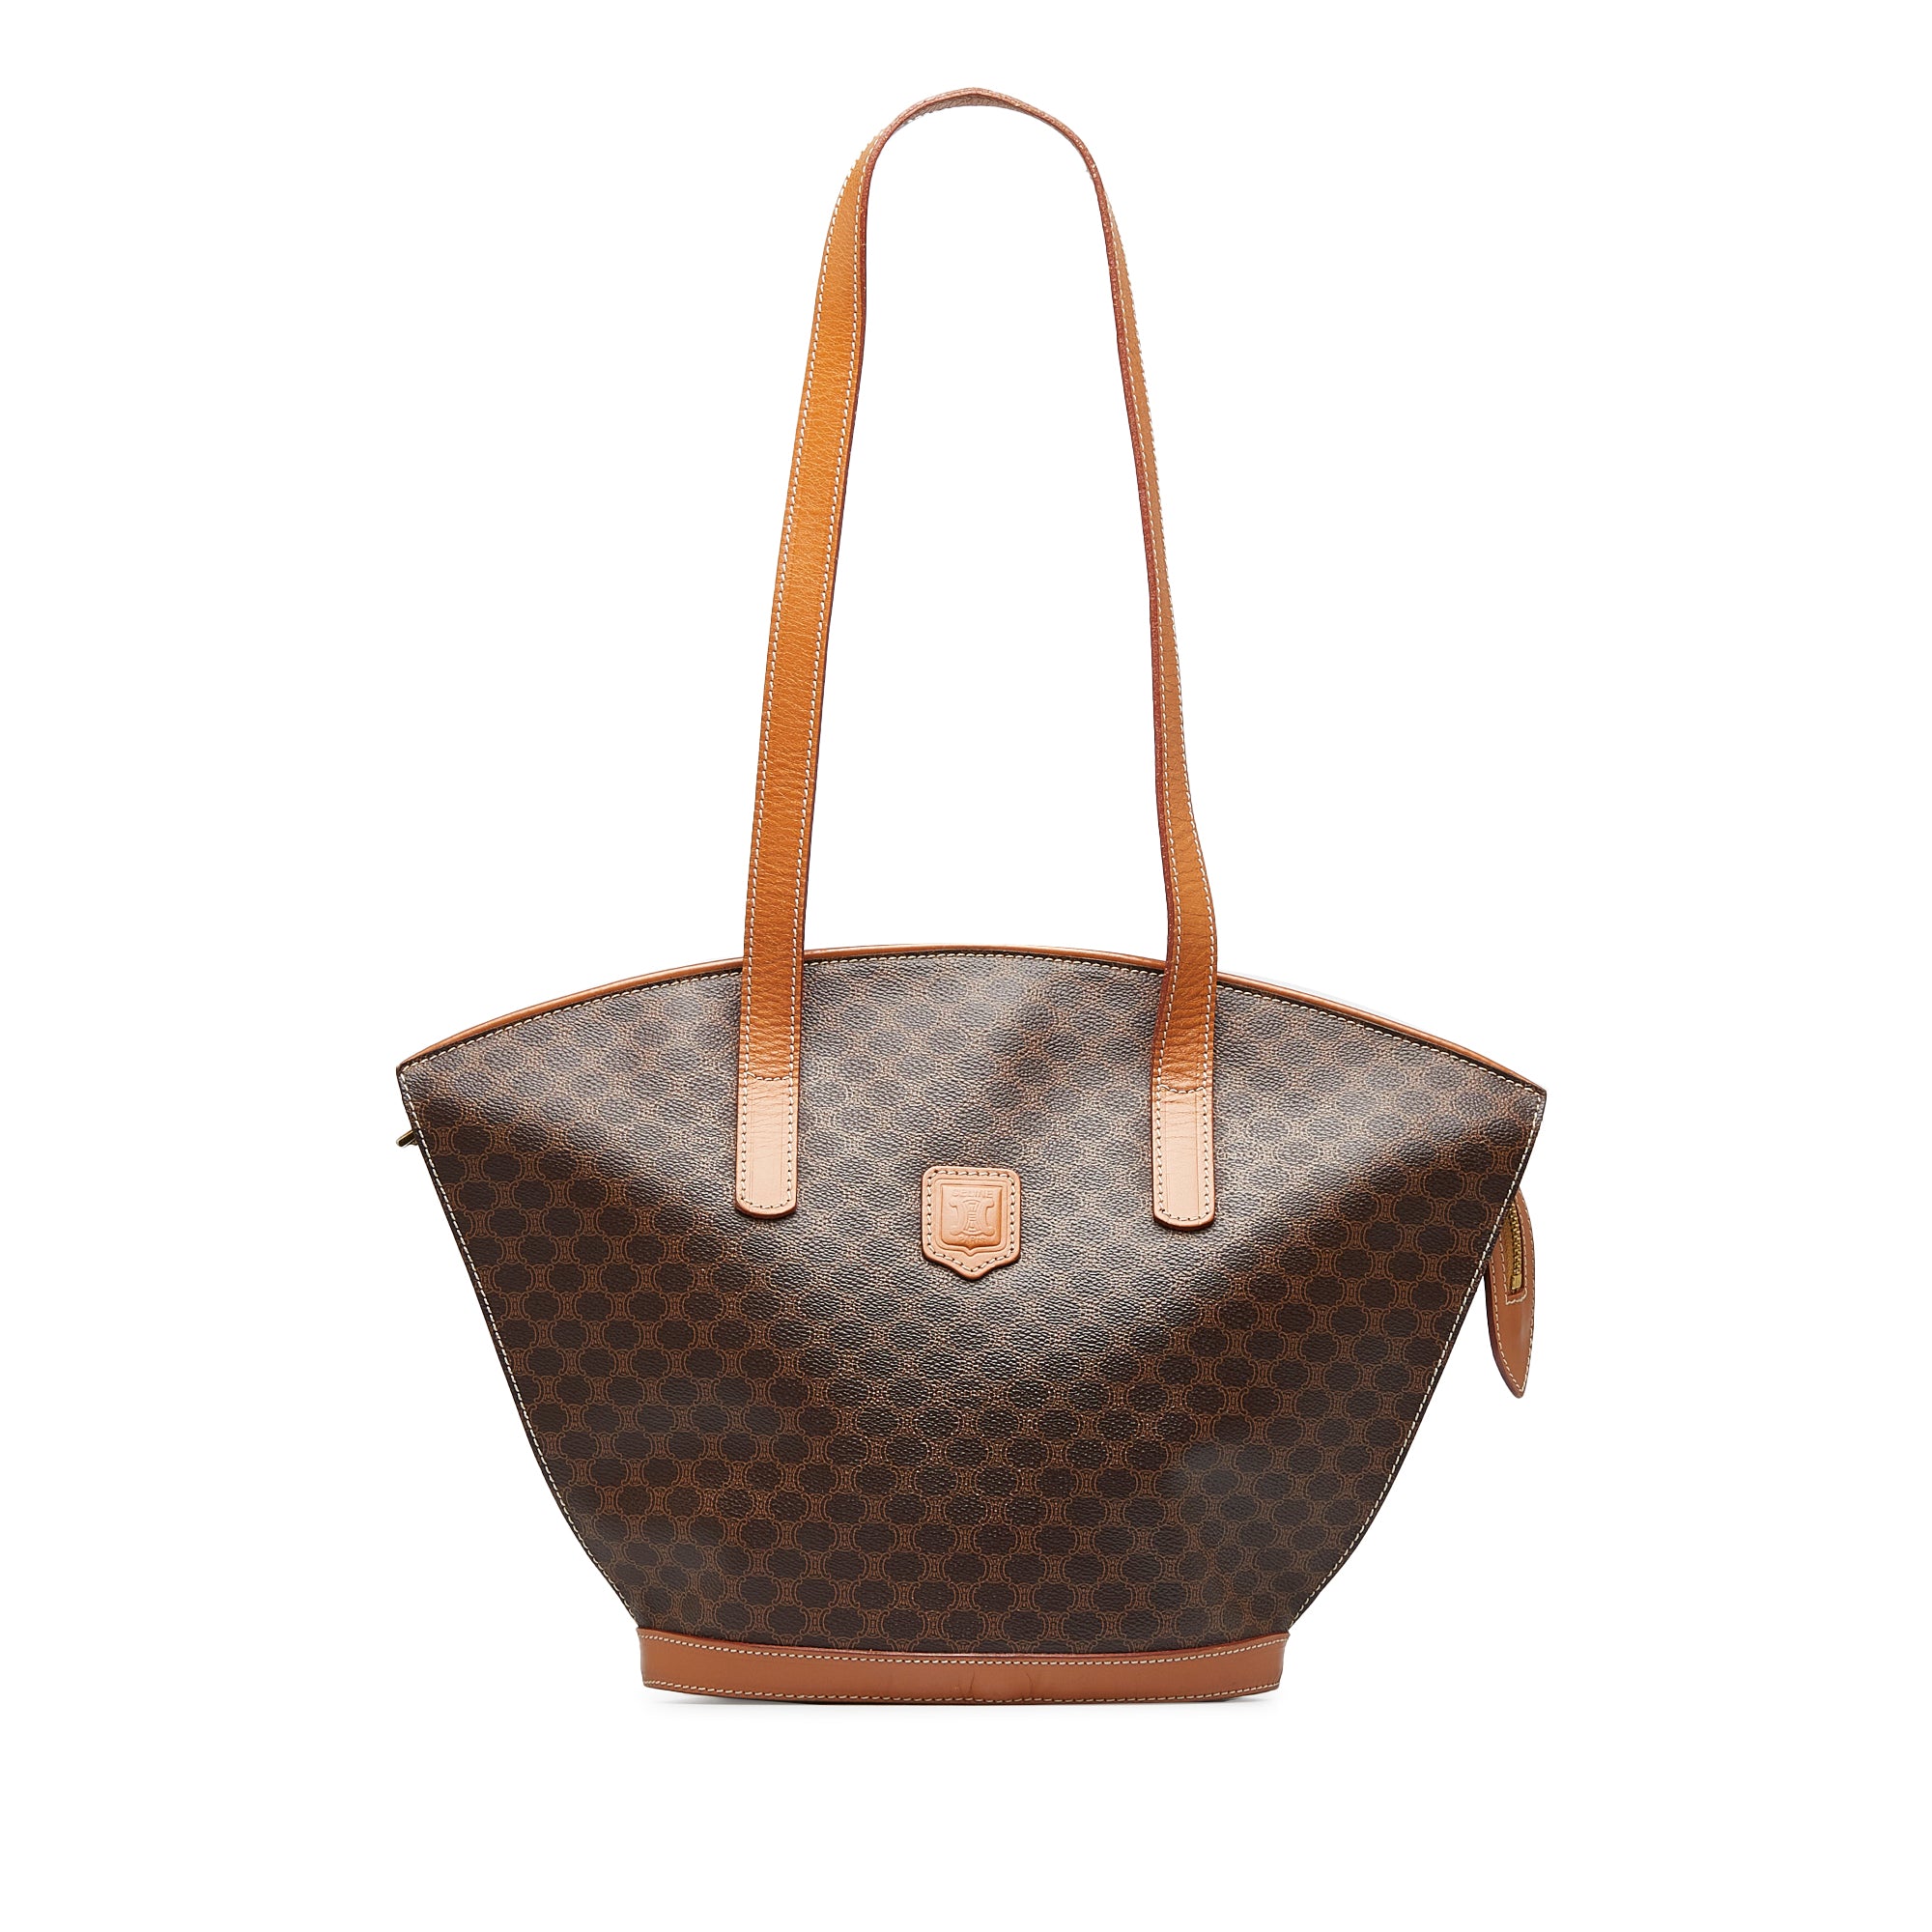 Celine Vintage Macadam Backpack - Brown Backpacks, Handbags